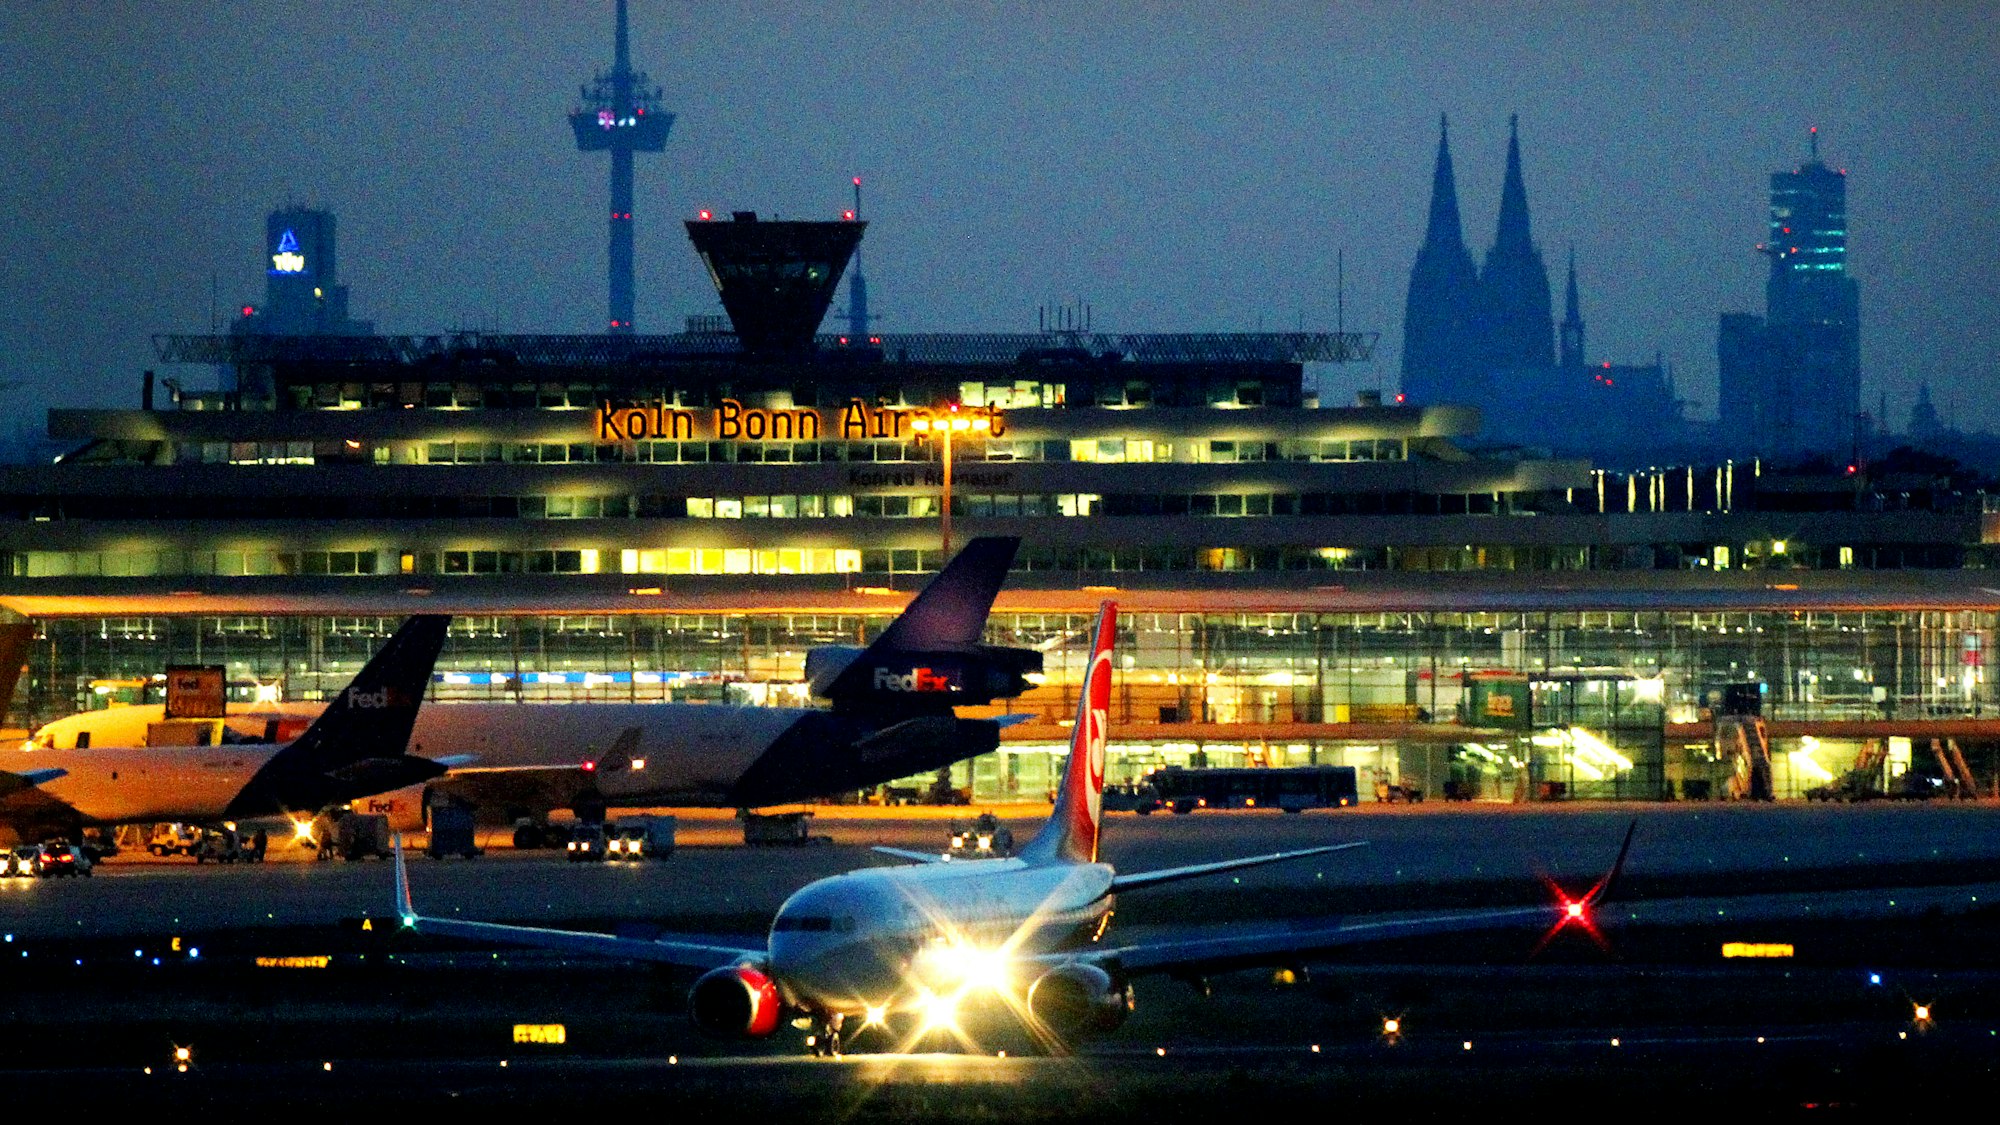 Der Kölner Flughafen